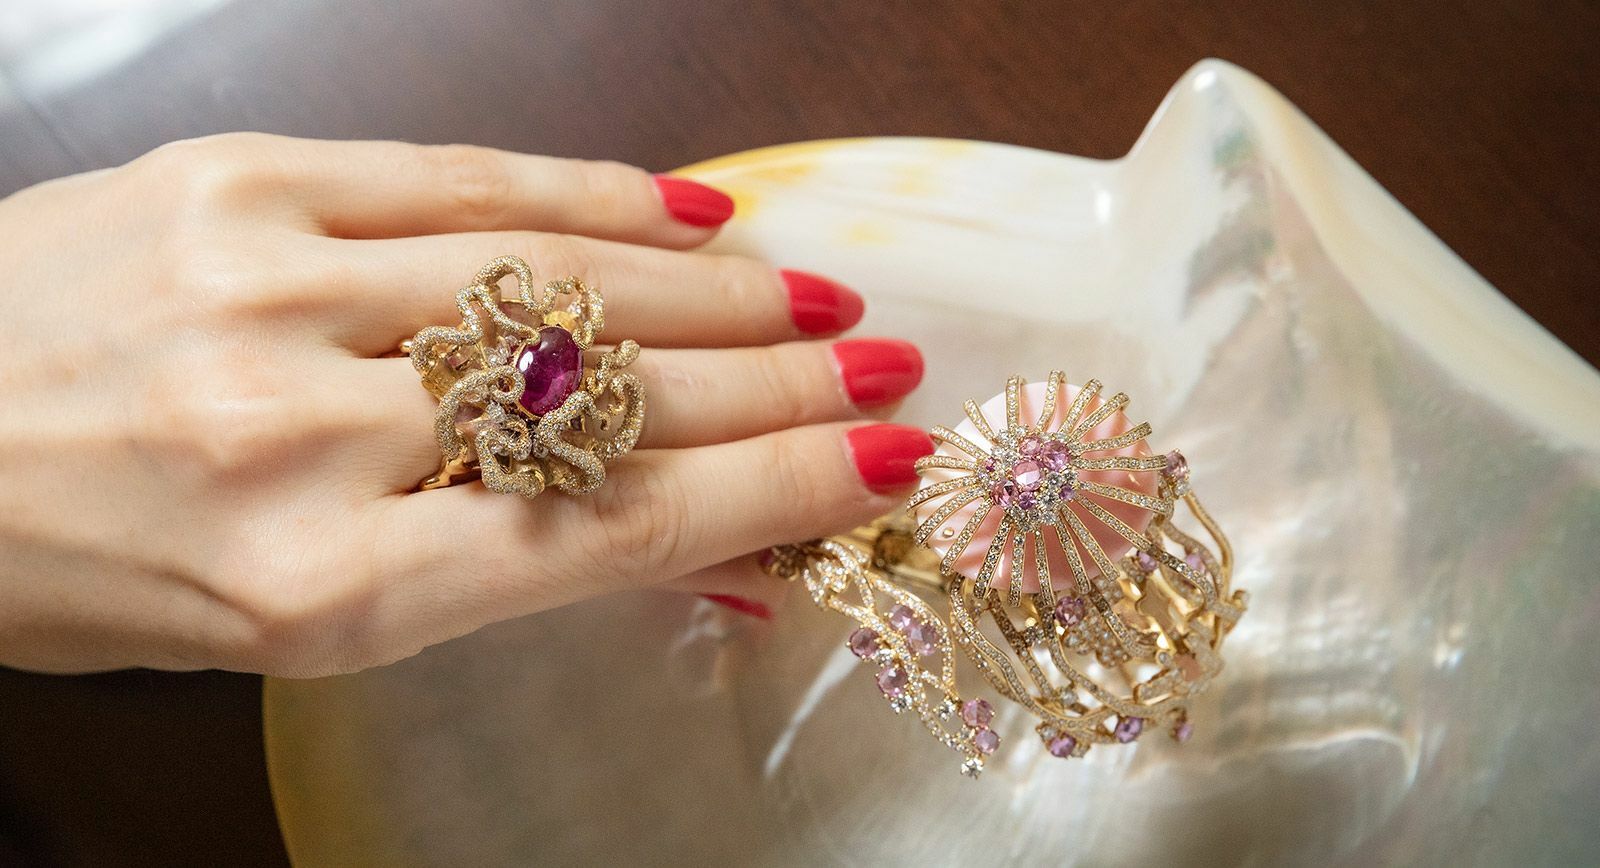 Masterstrokes by Jewels Emporium, современный пионер французской эмали на ювелирных украшениях в Индии